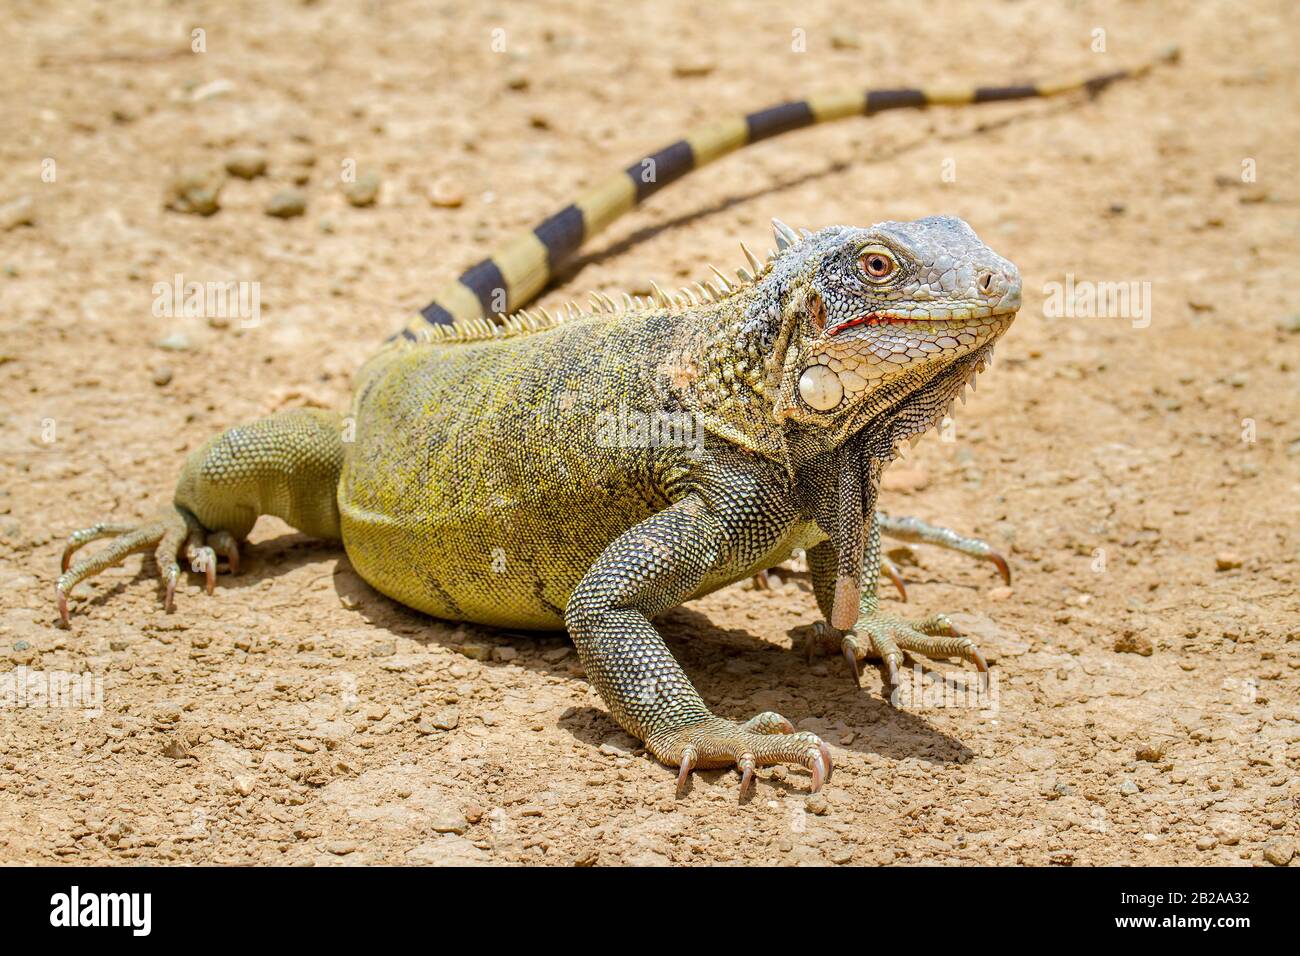 Cerca de la hermosa iguana verde se encuentra en el suelo Foto de stock